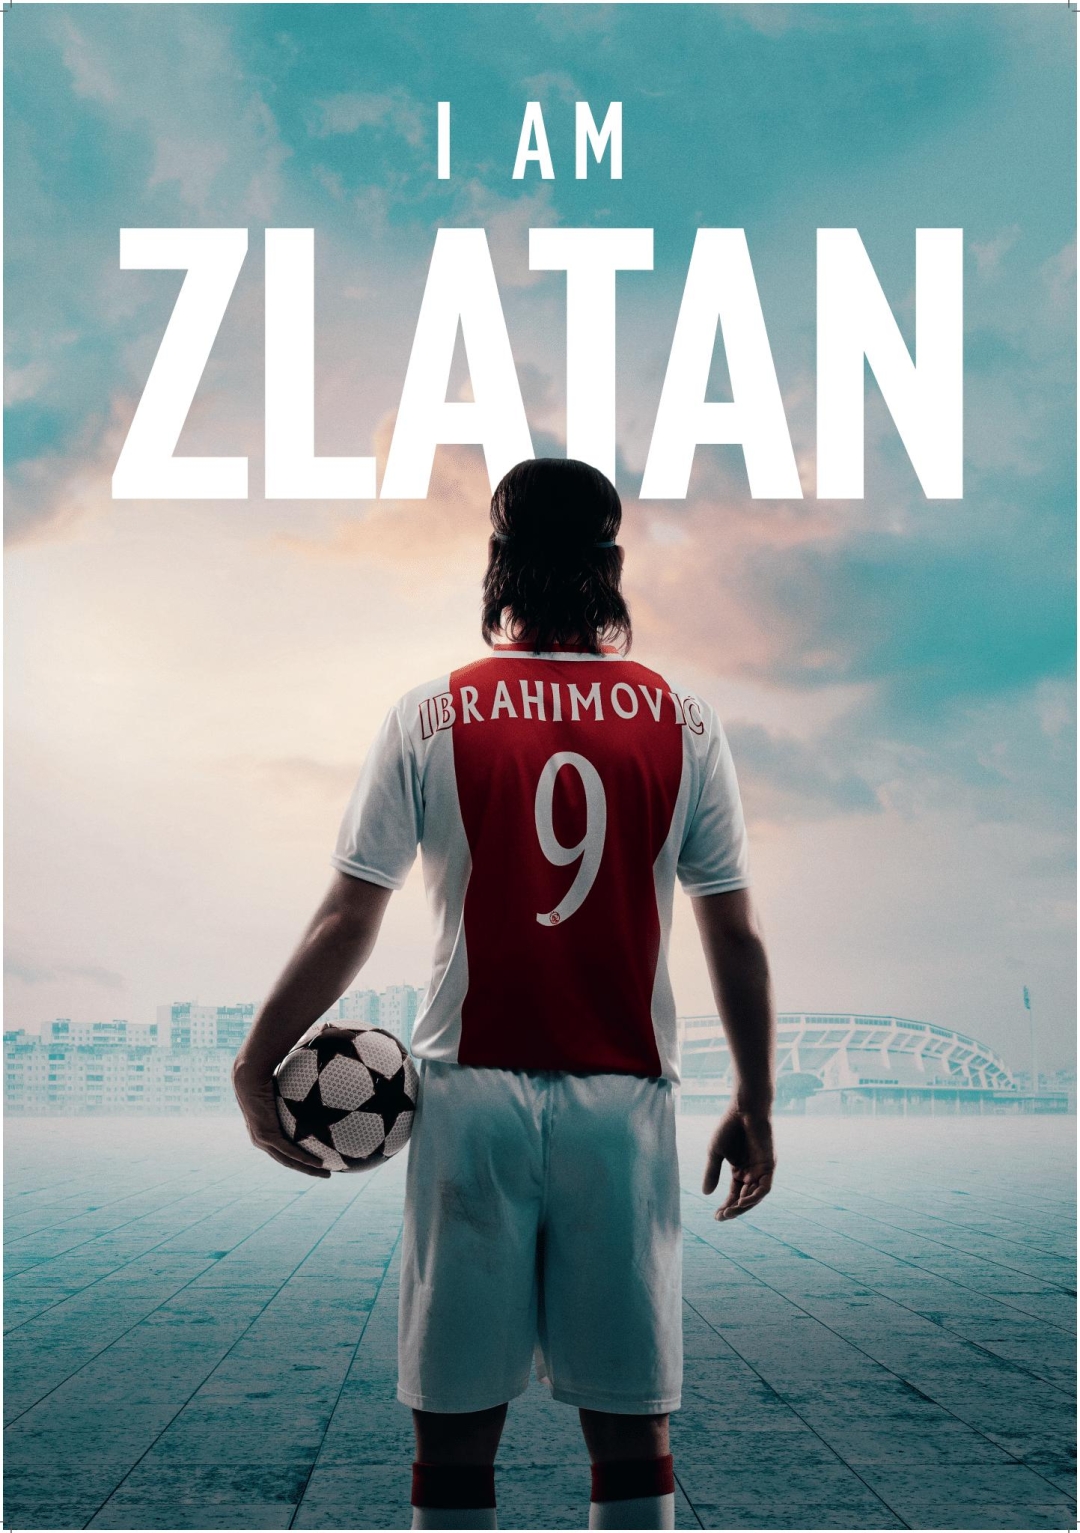 100 minuta slave Zlatana Ibrahimovića na velikom platnu